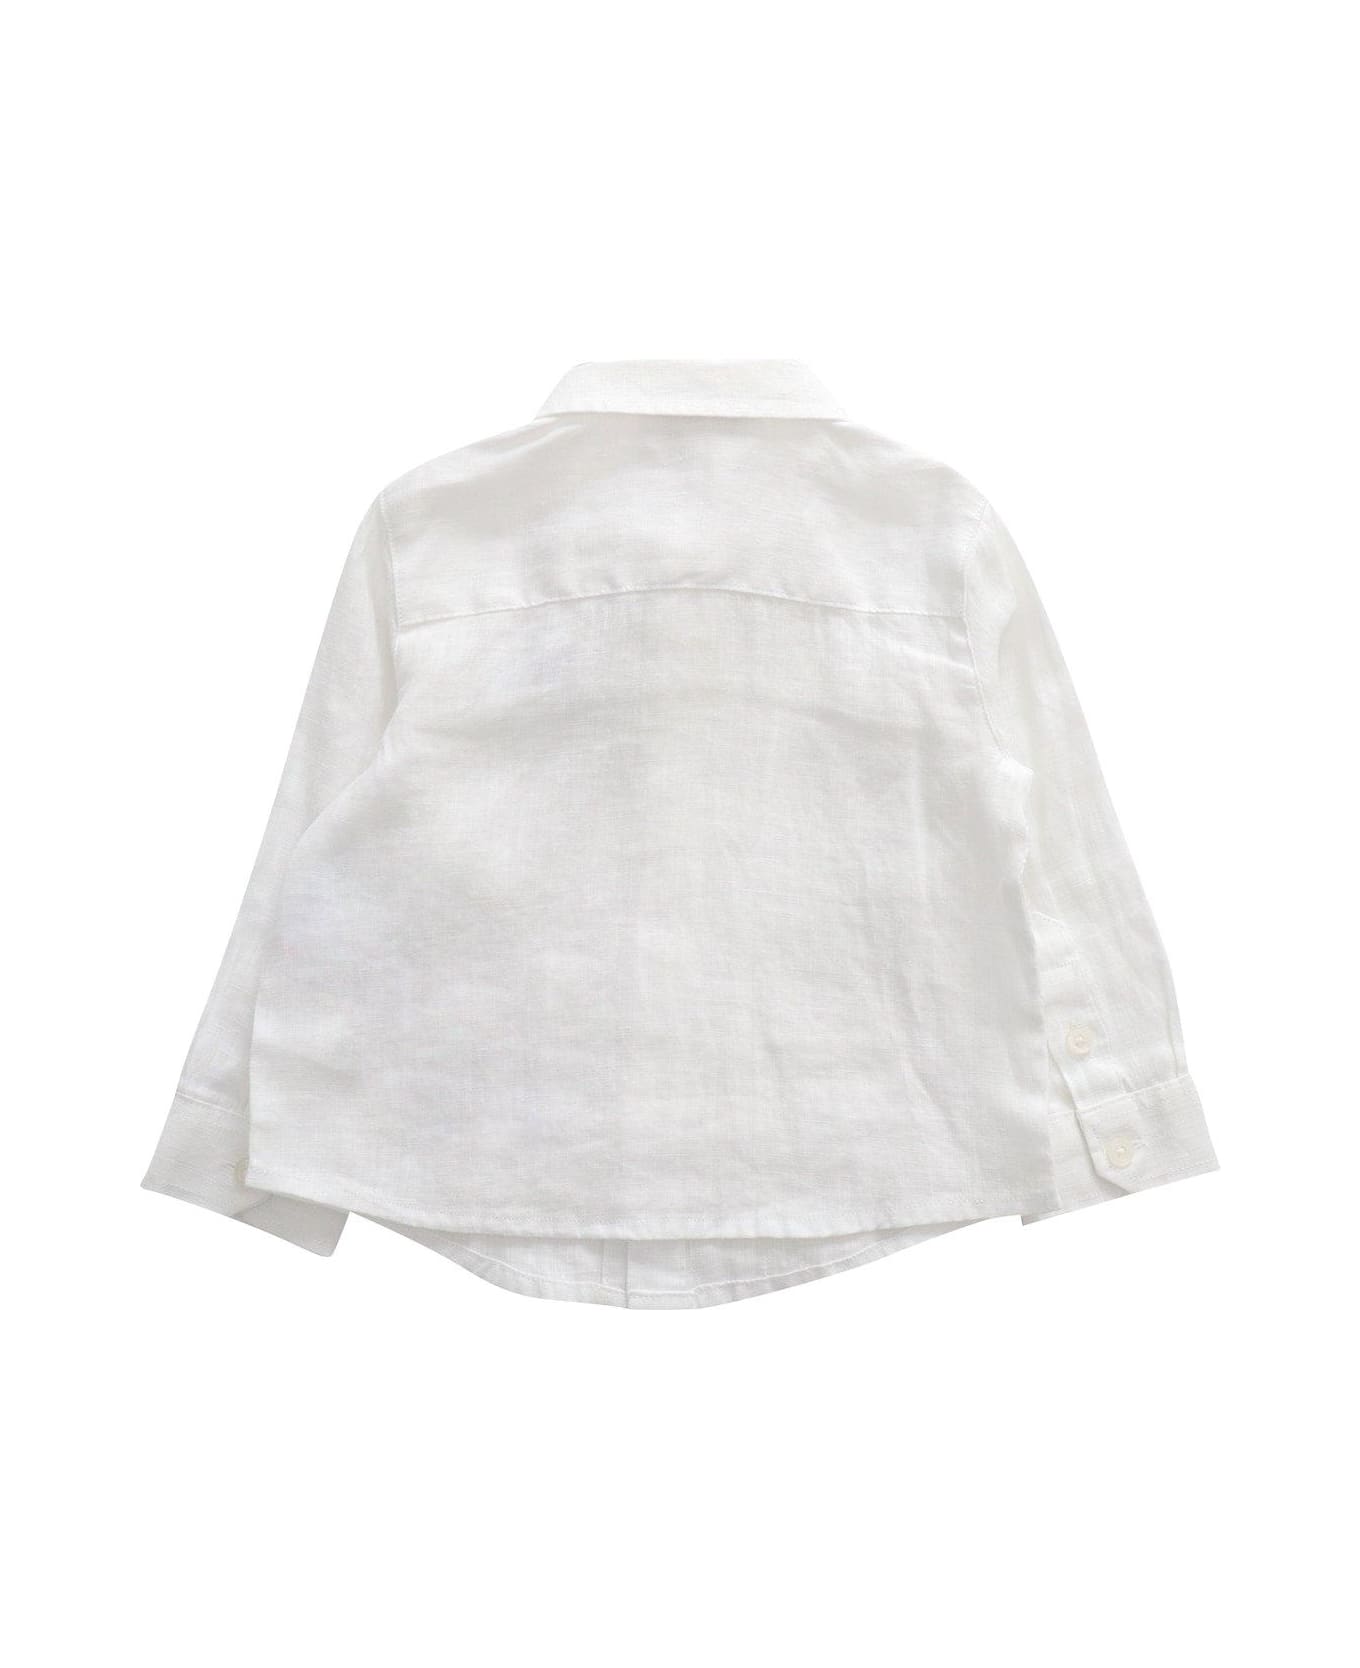 Emporio Armani Logo Embroidered Buttoned Shirt - Bianco ottico